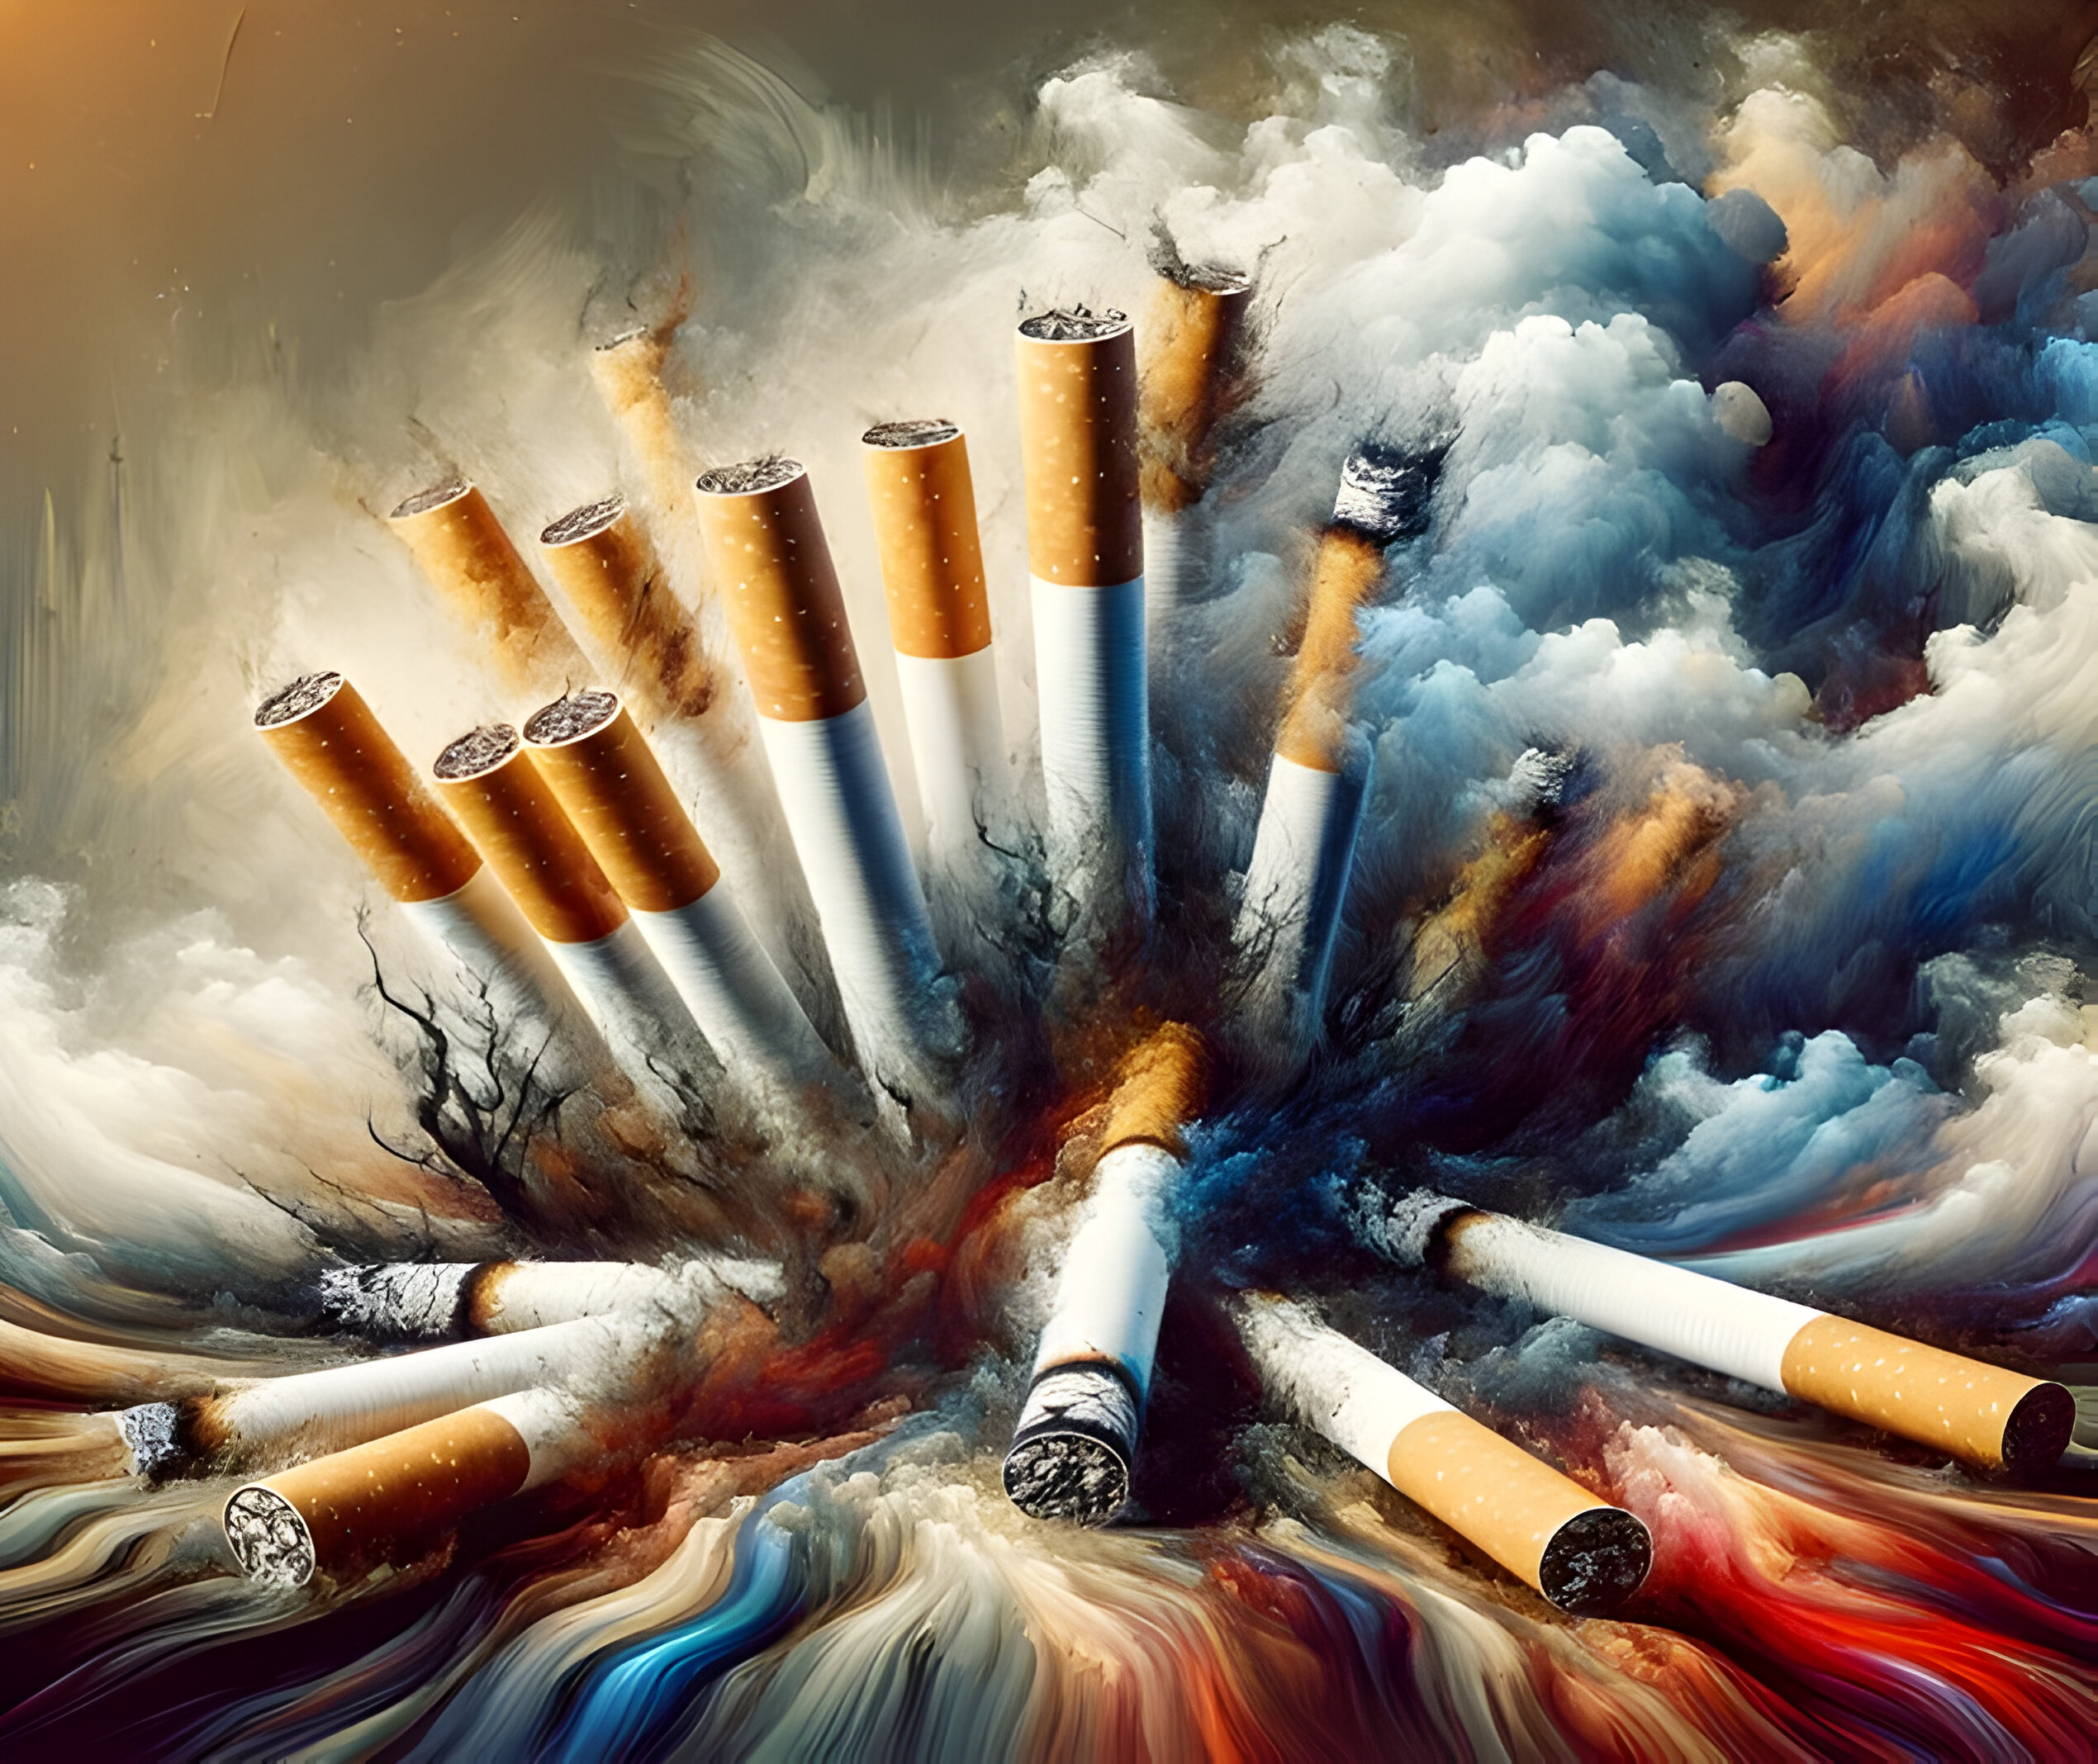 Prevenzione tabacco Svizzera: Un futuro senza fumo - Svizzera